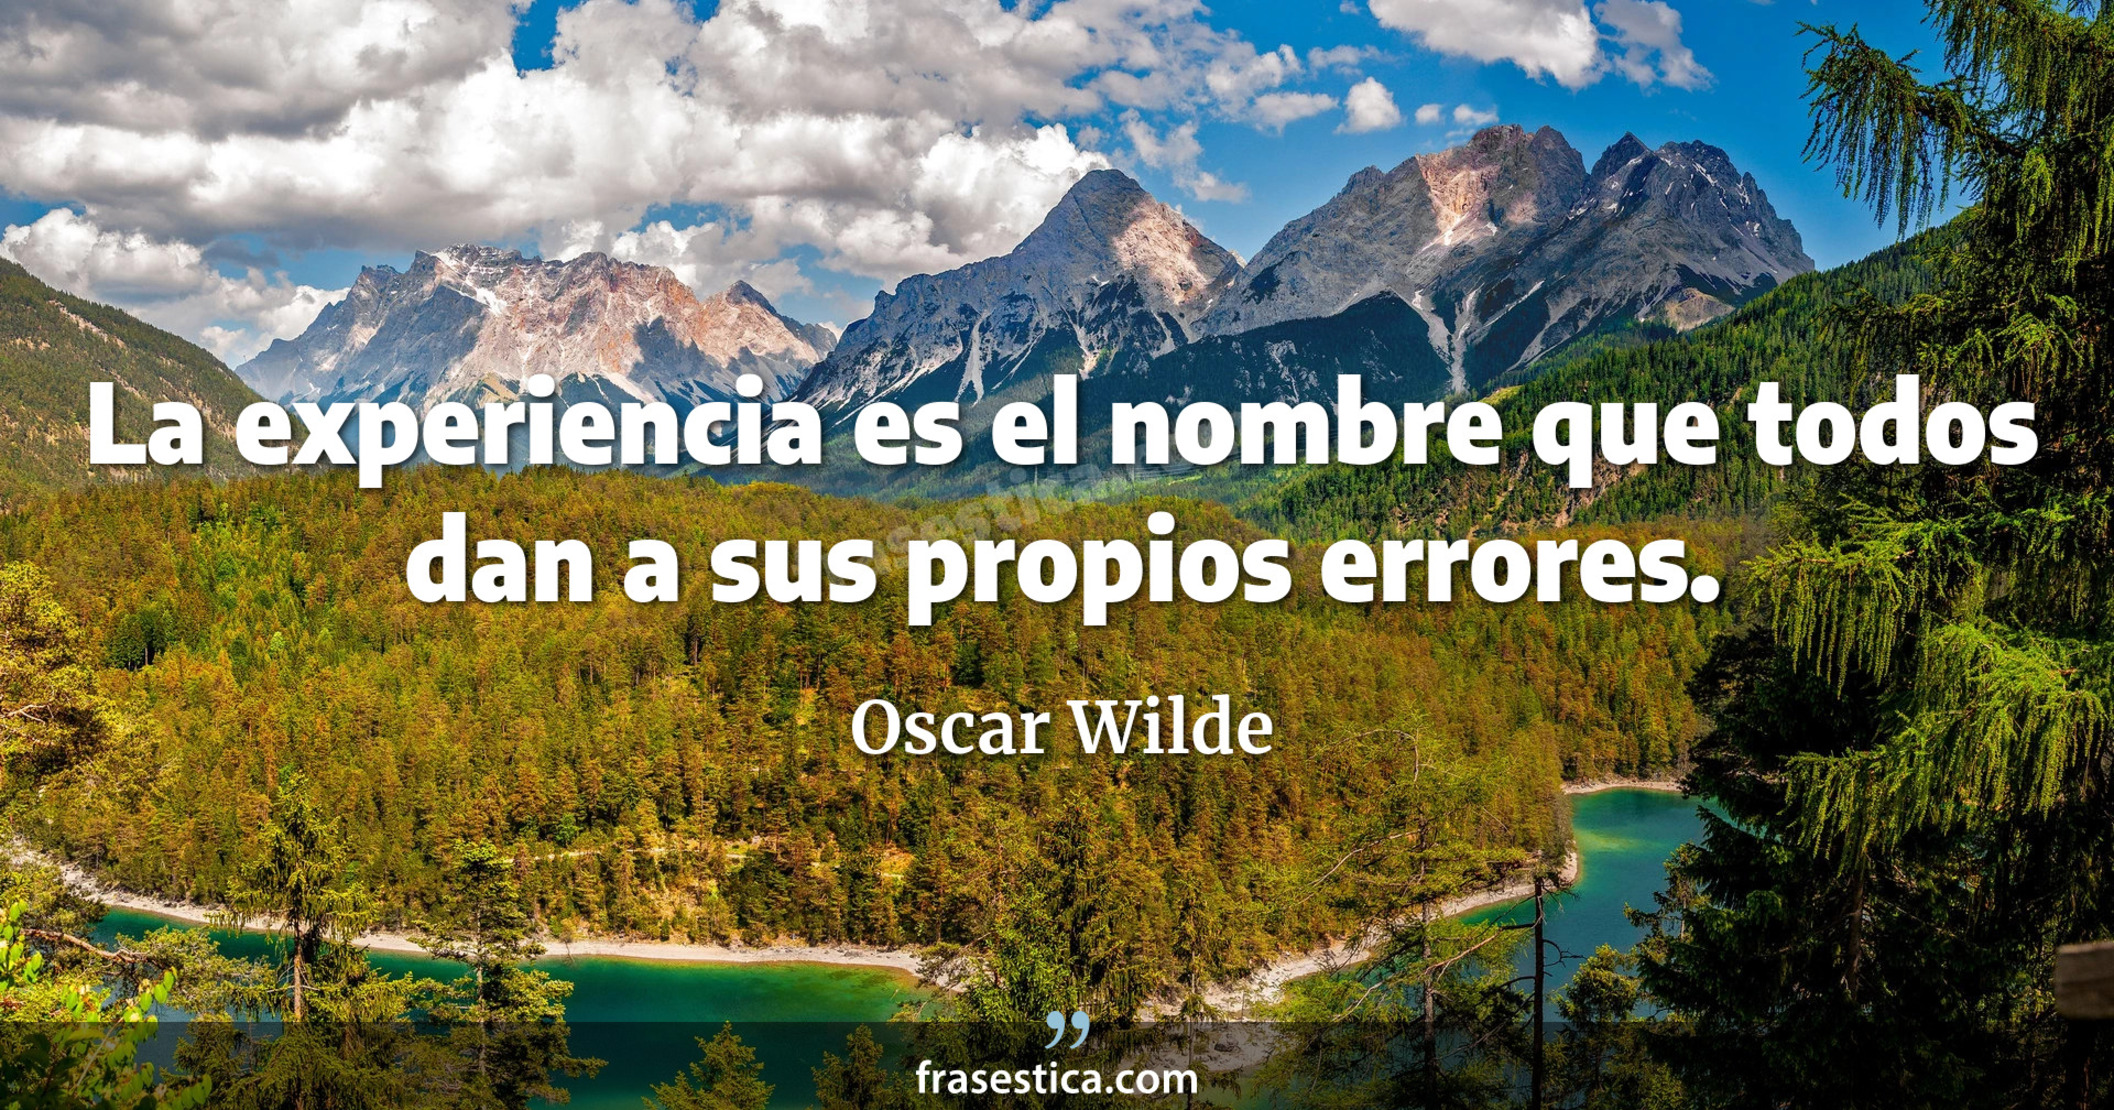 La experiencia es el nombre que todos dan a sus propios errores. - Oscar Wilde